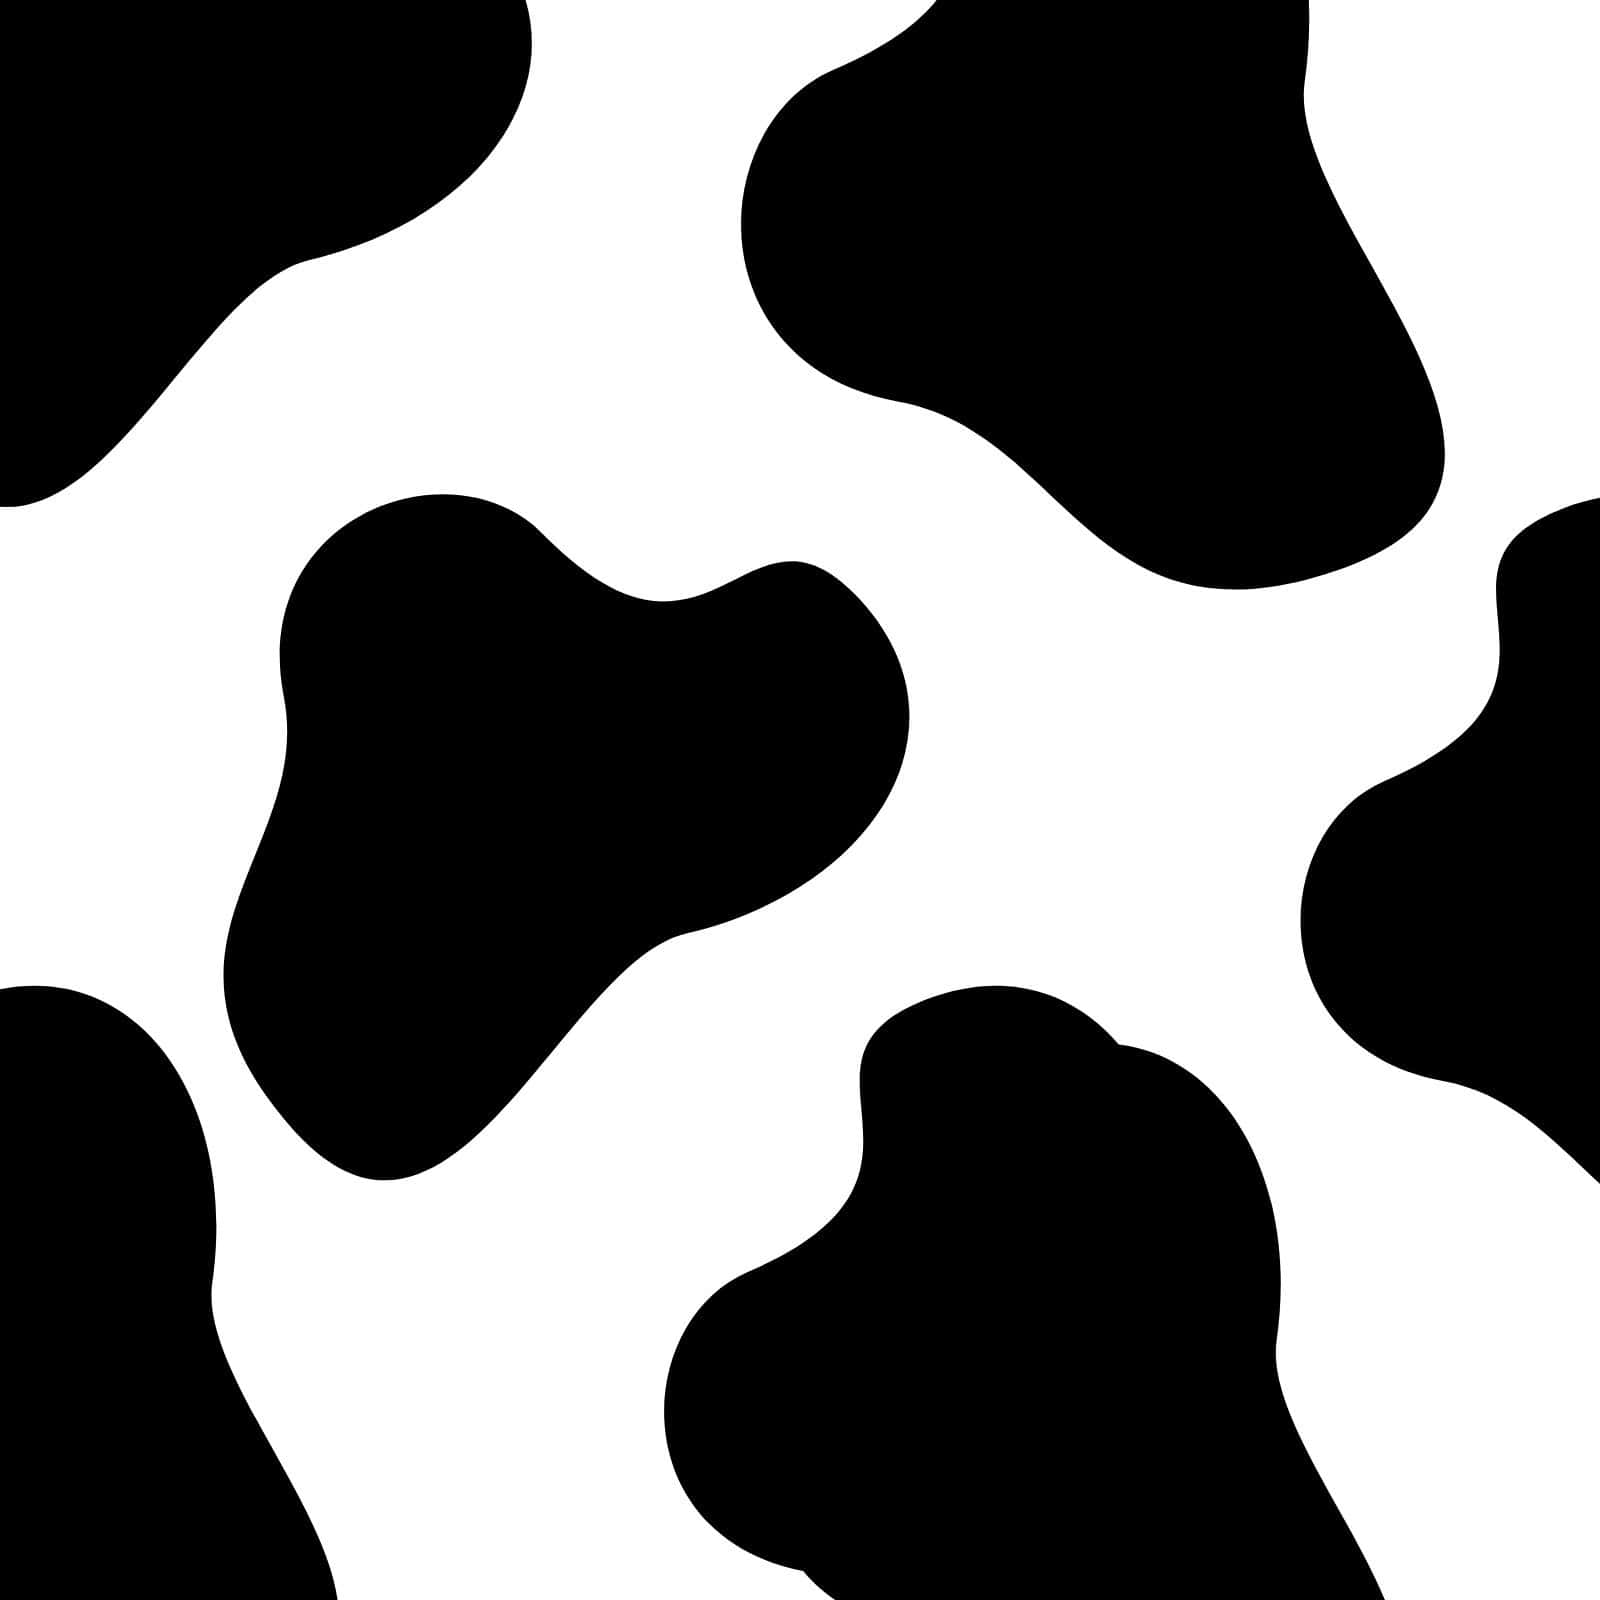 Unsueño Lácteo - Una Vaca En Blanco Y Negro.